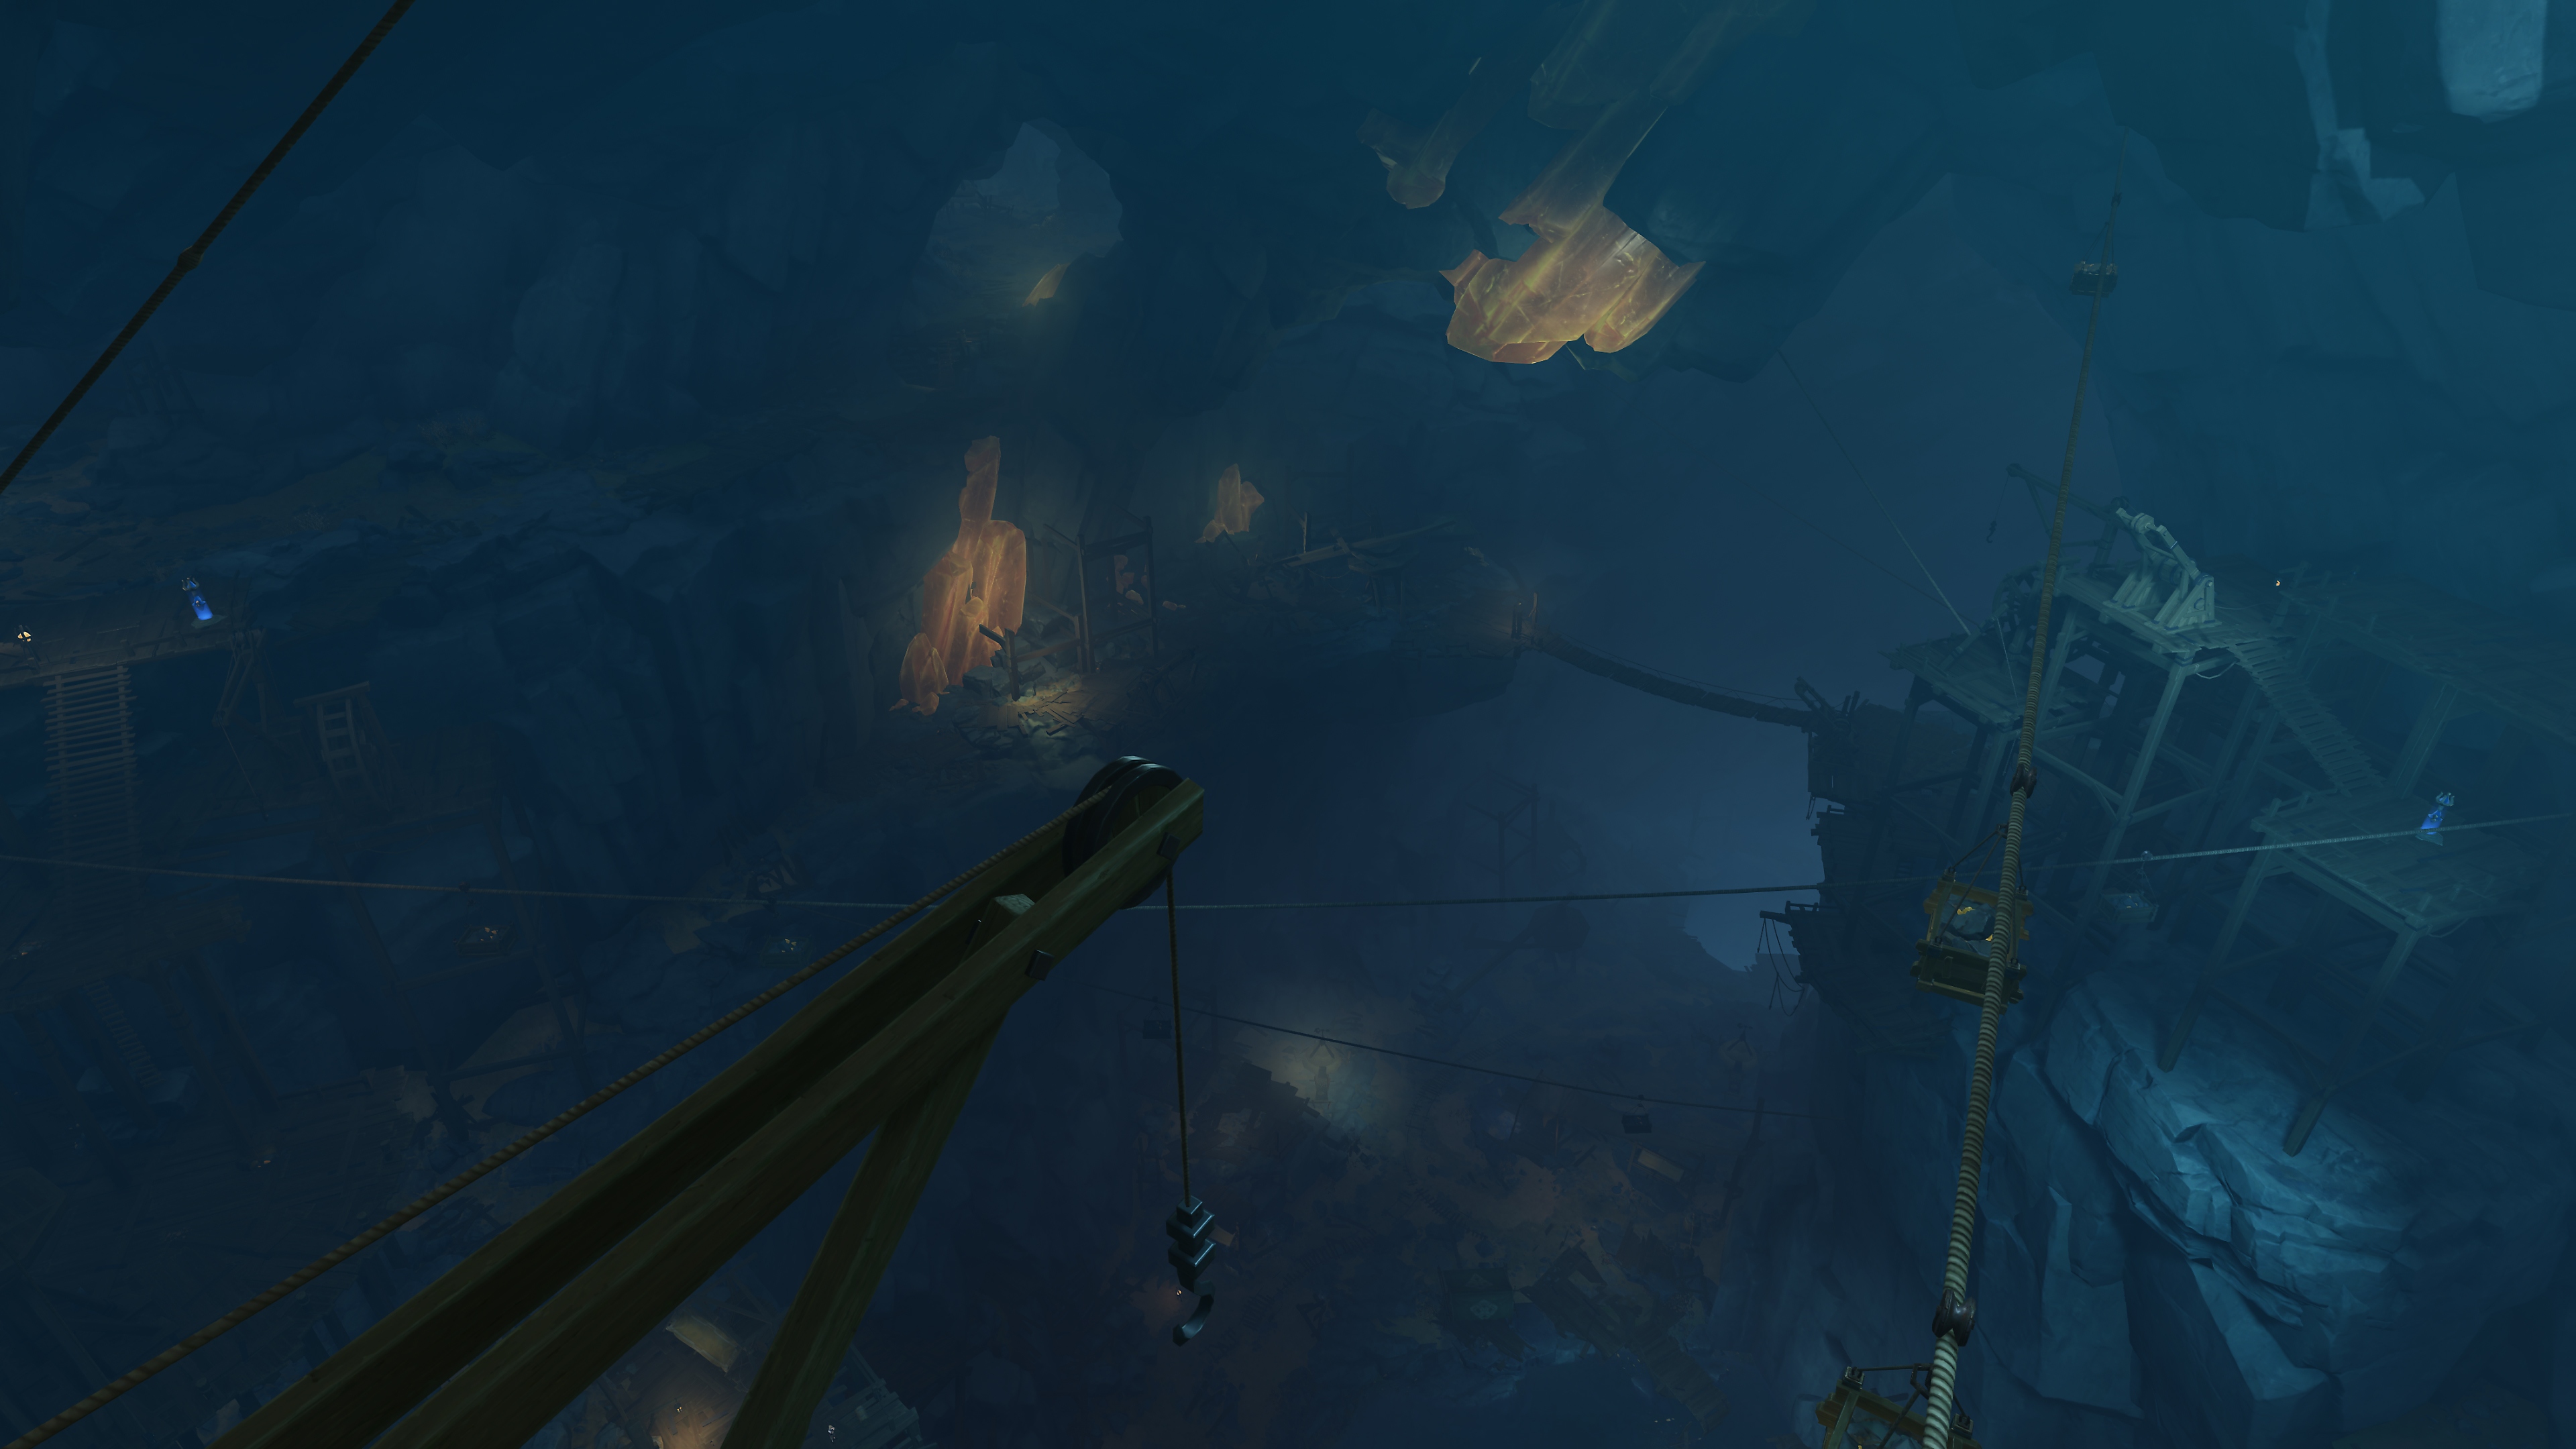 Genshin Impact: Istantanea della schermata dell'aggiornamento 2.6 che mostra l'interno di una miniera sotterranea con cristalli luminosi incastonati nelle rocce